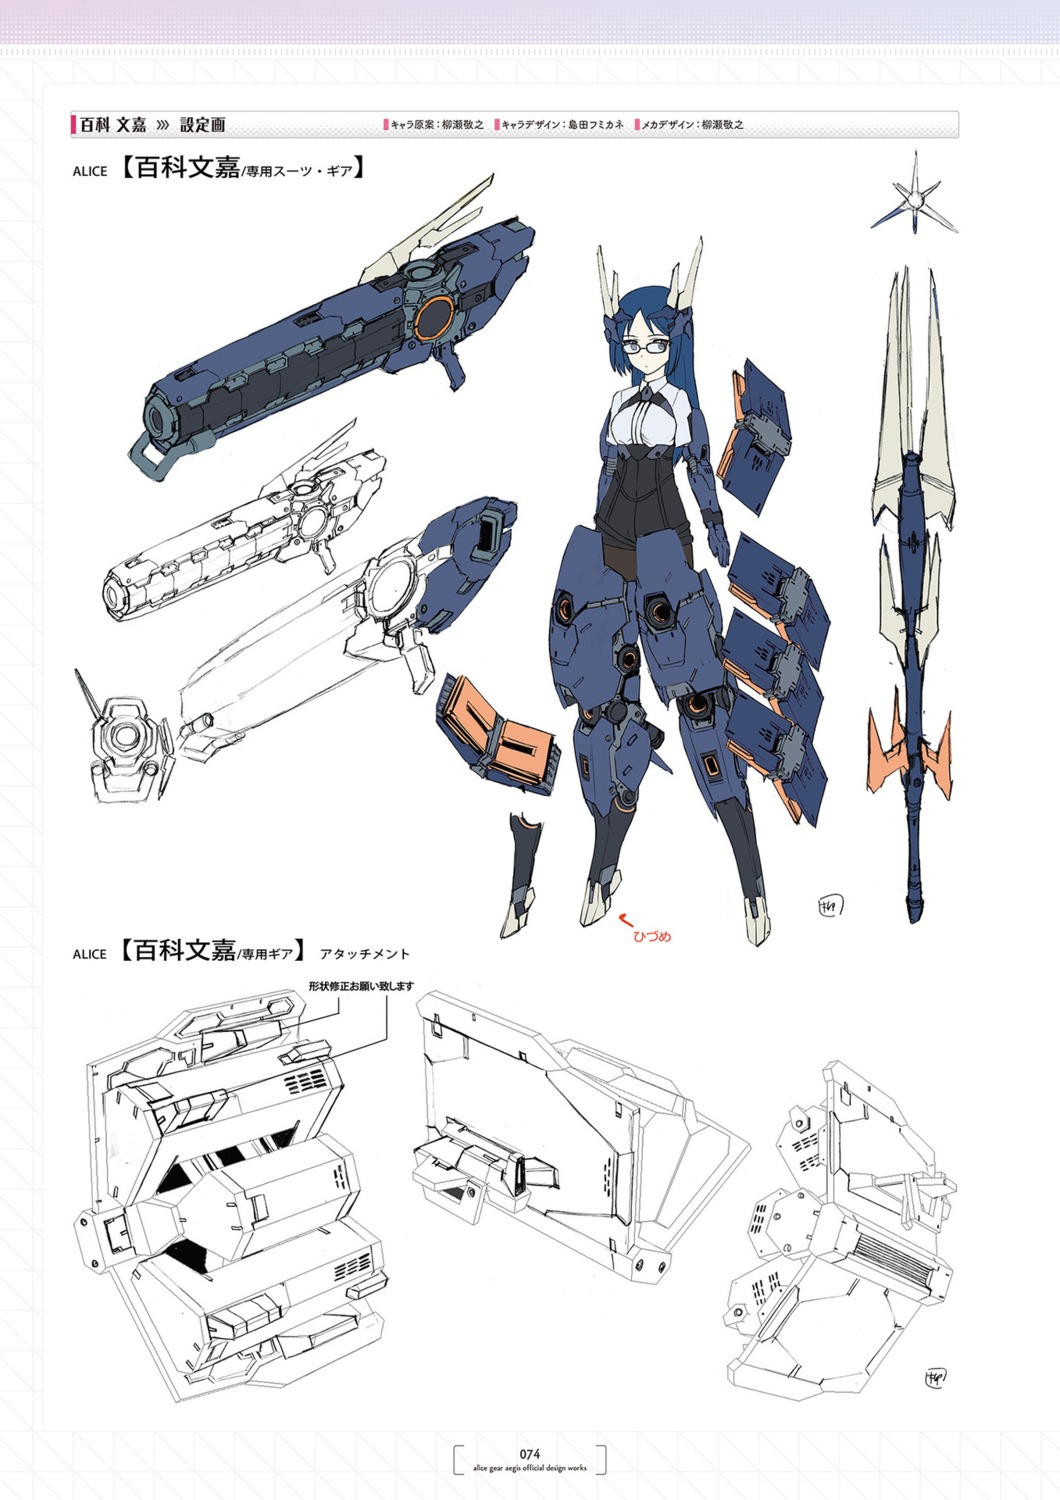 alice_gear_aegis bodysuit character_design momoshina_fumika weapon yanase_takayuki